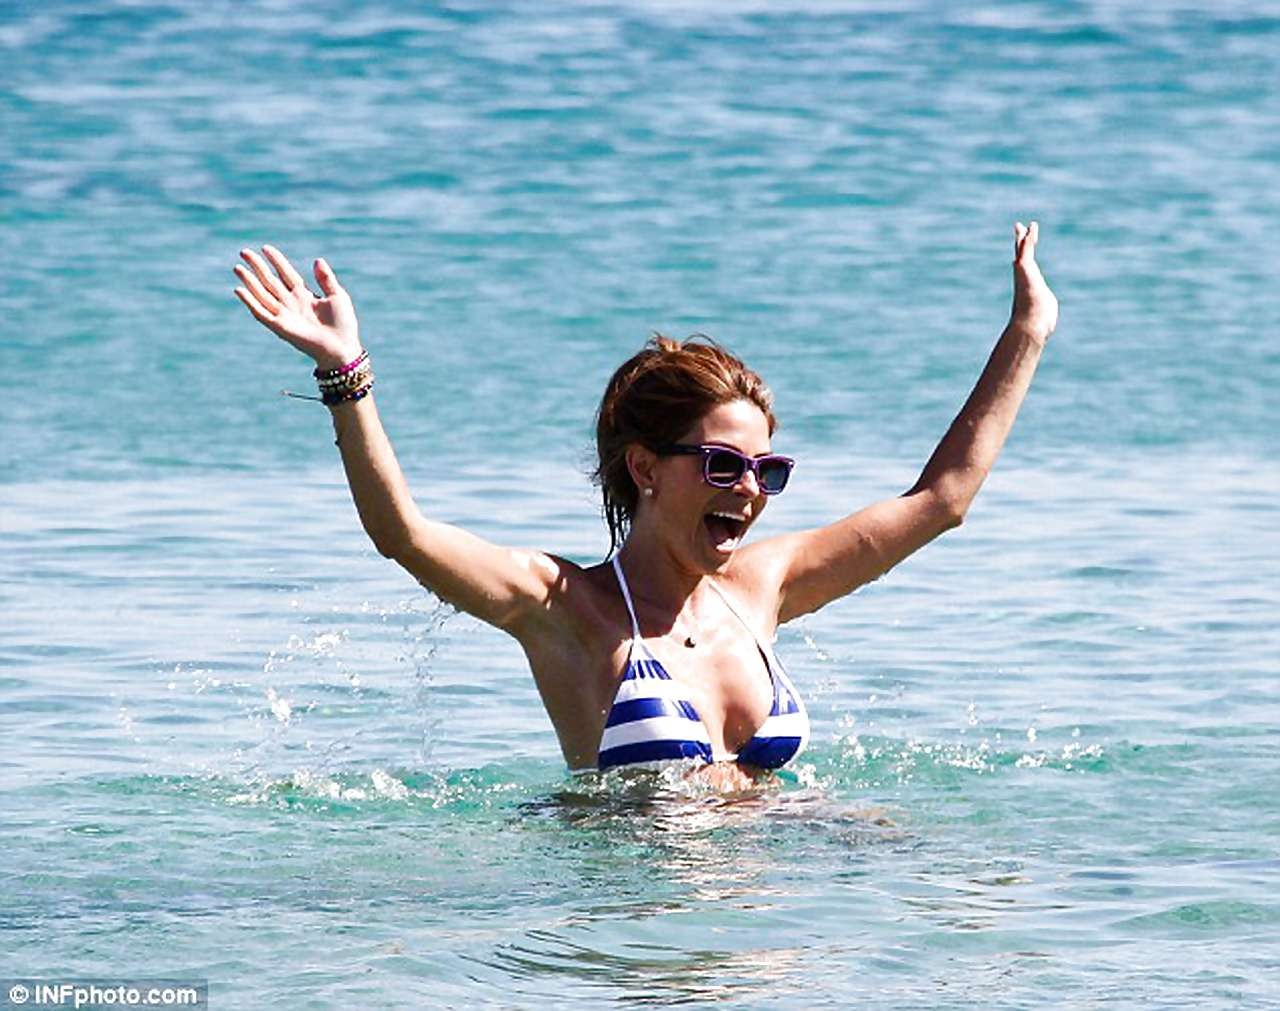 Maria menounos mostrando su sexy cuerpo en bikini en la playa
 #75227680